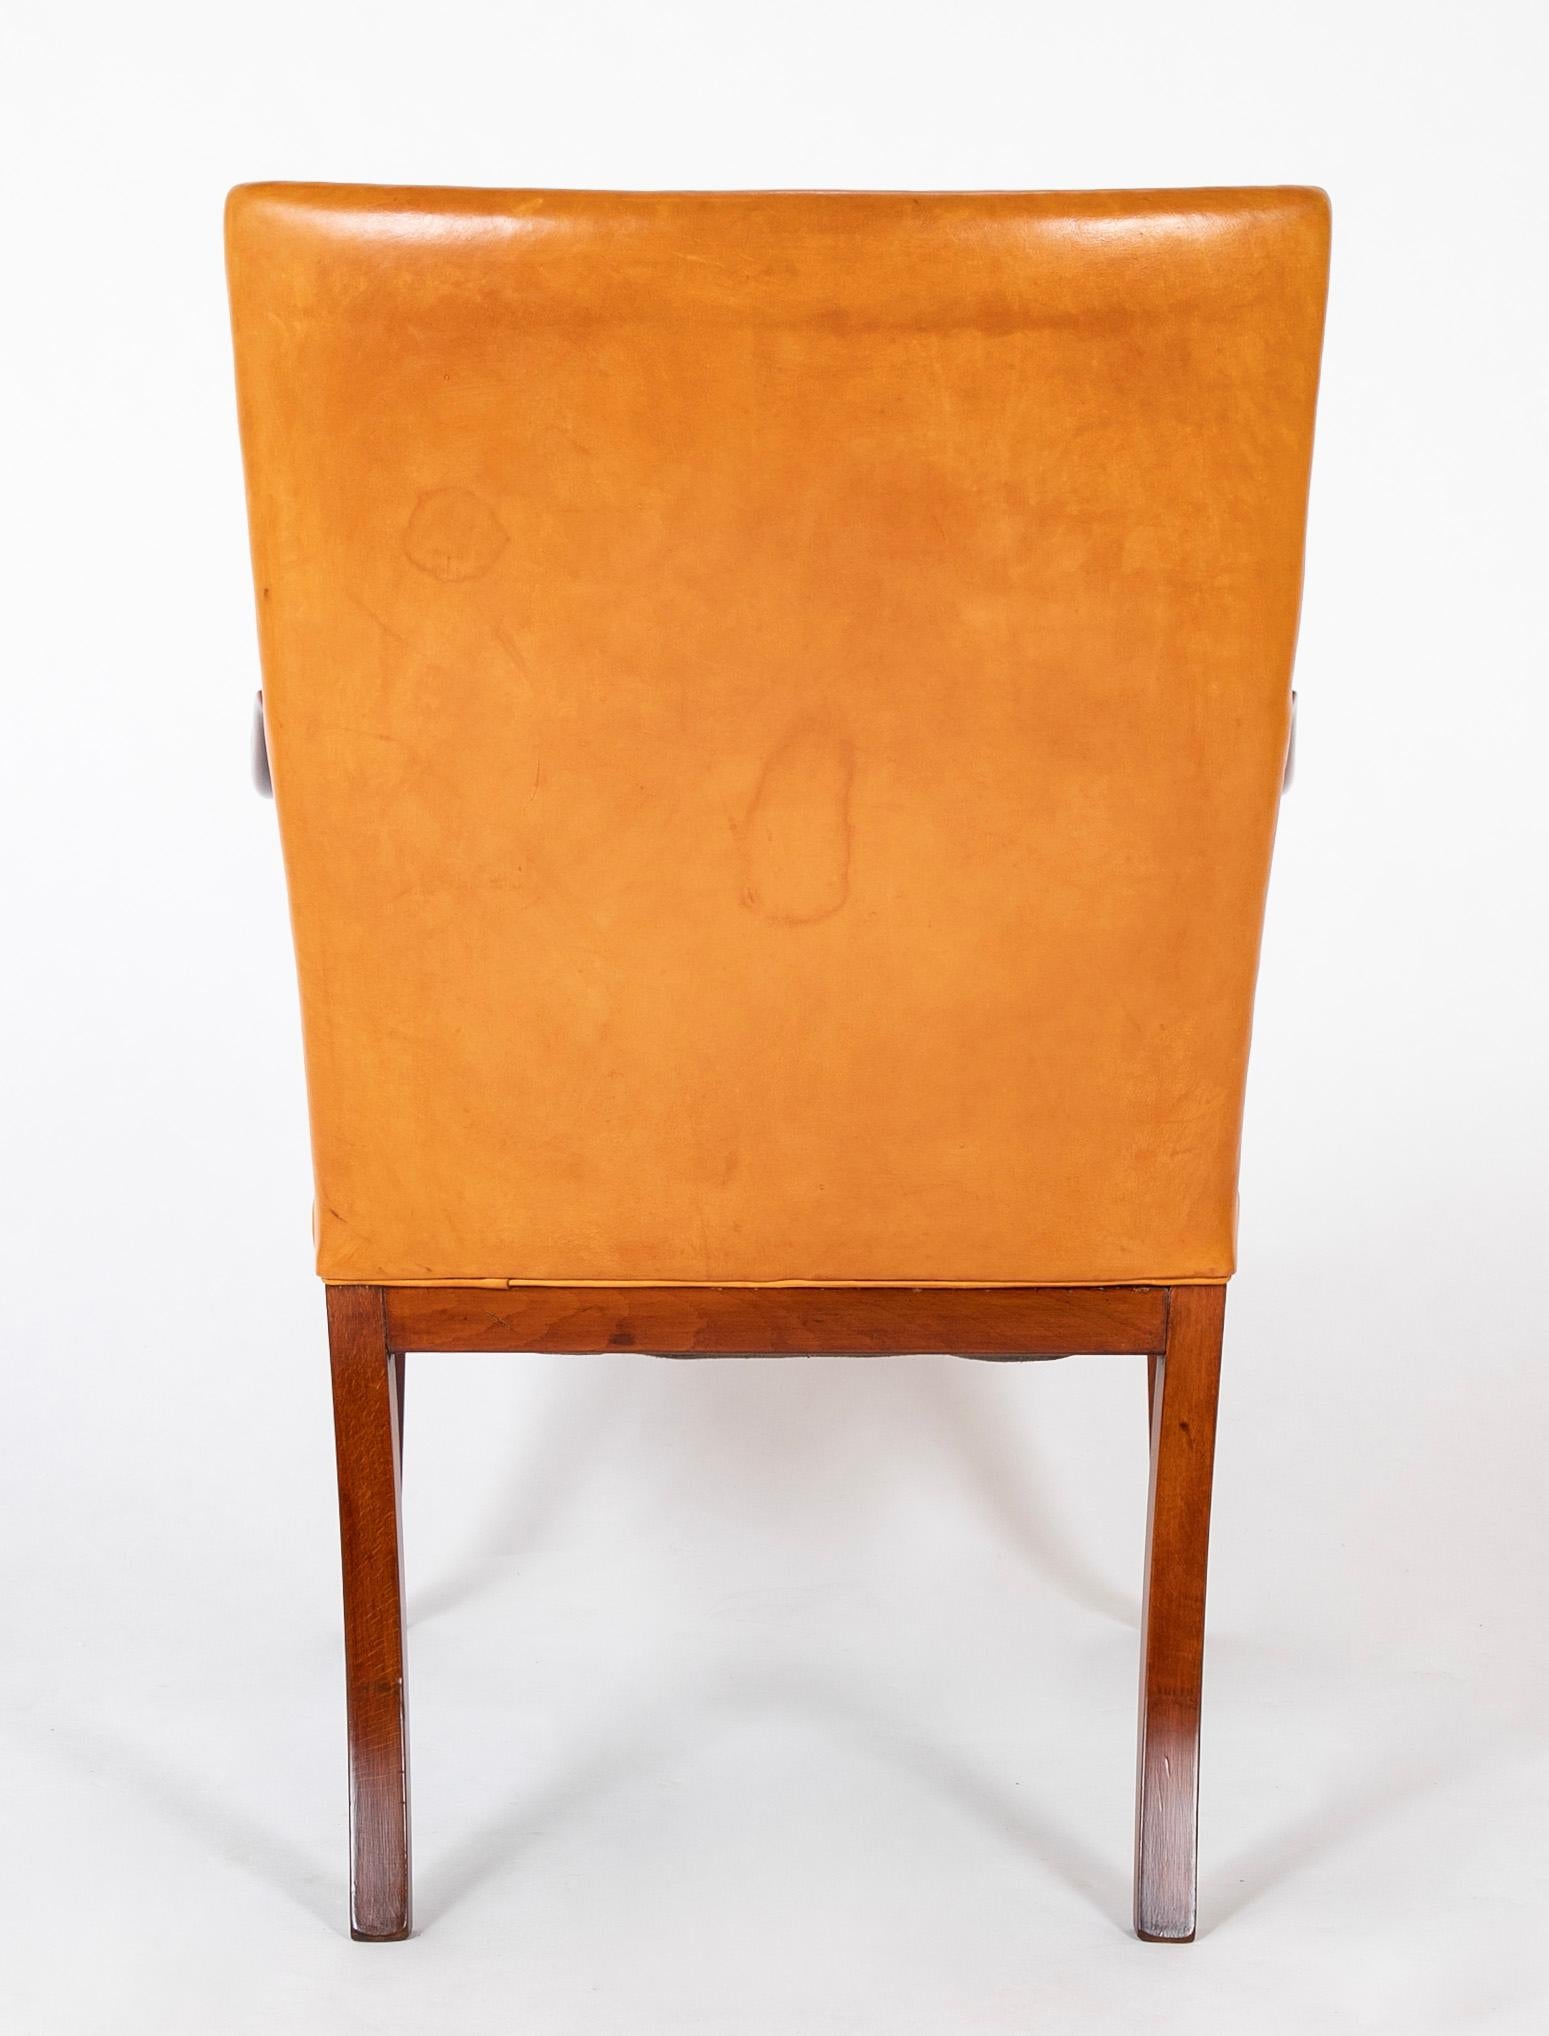 Beech Fritz Henningsen Arm Chair For Sale